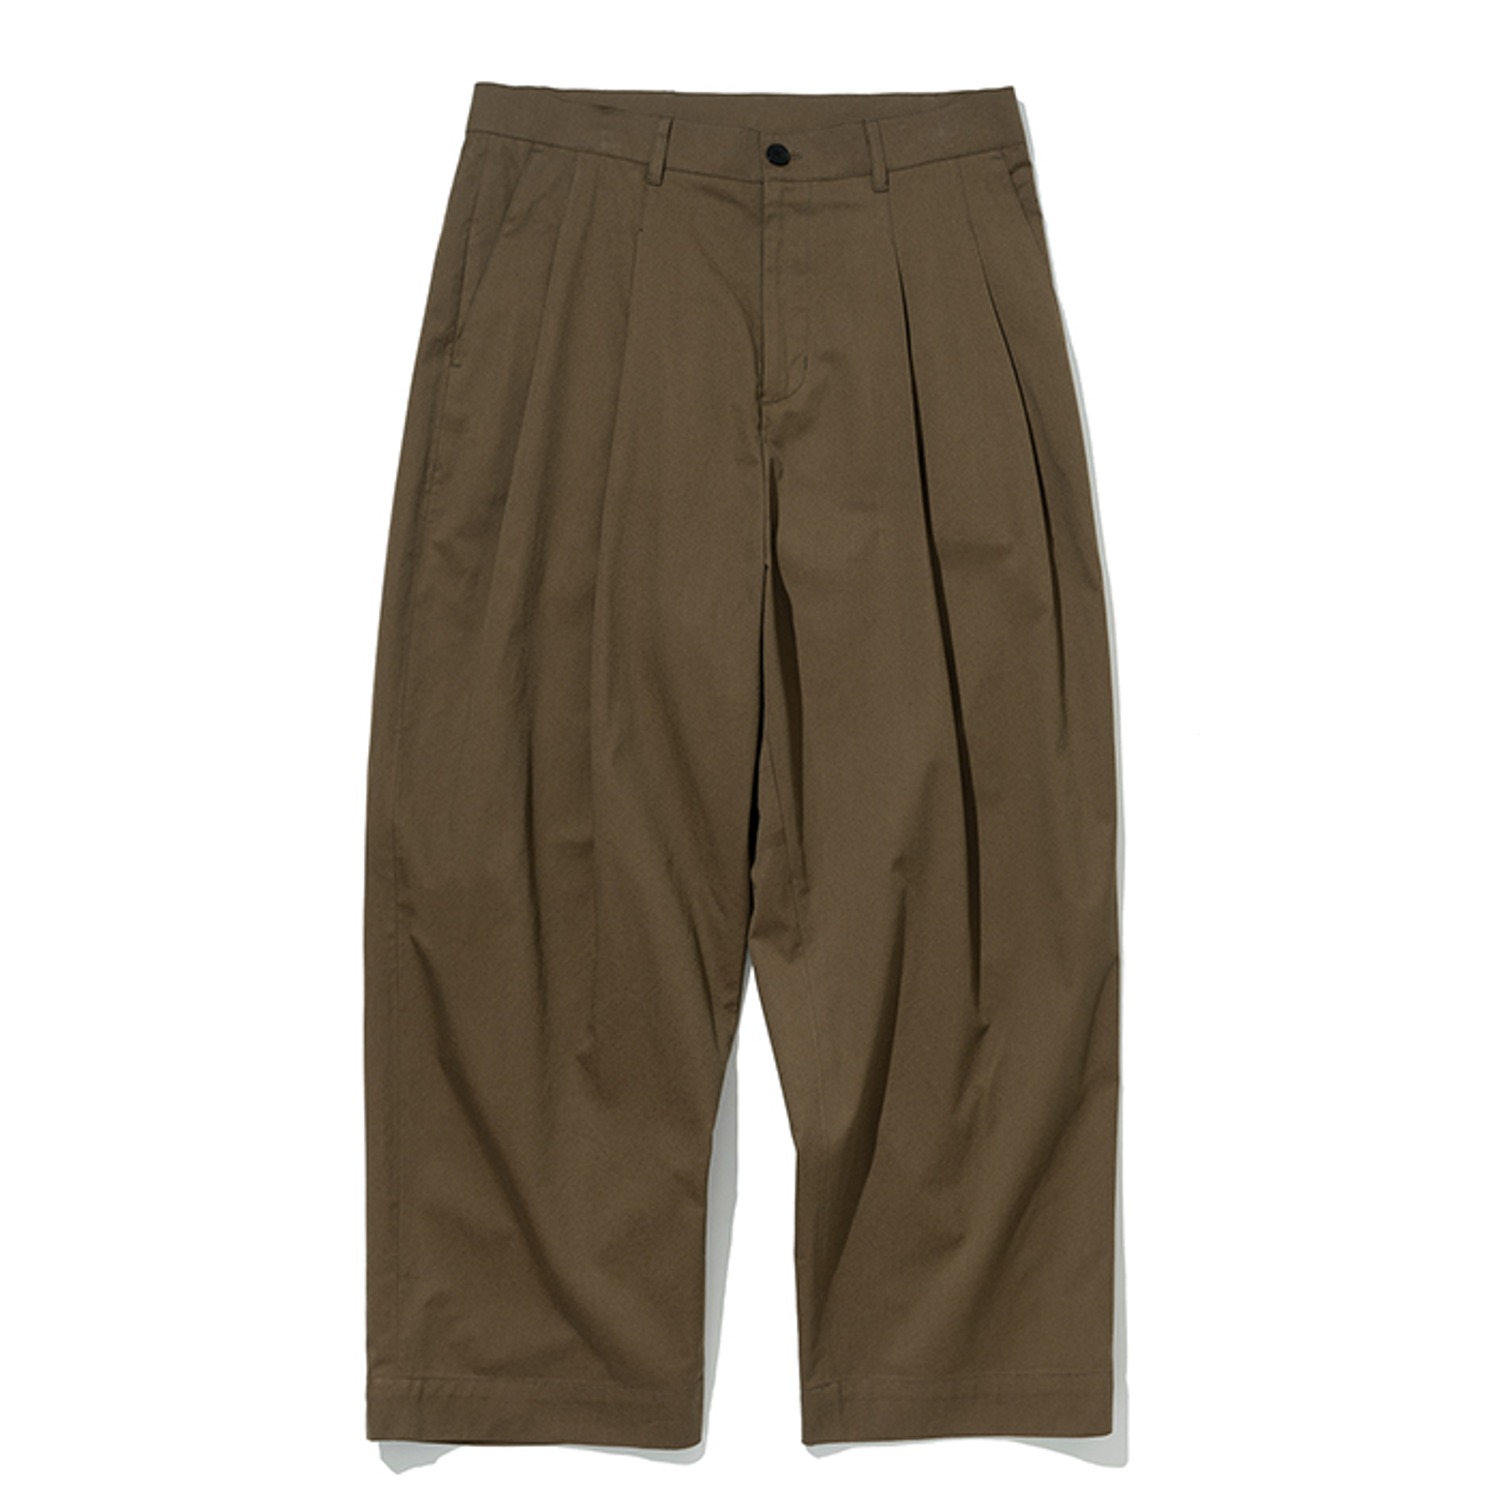 wide crop pants brown